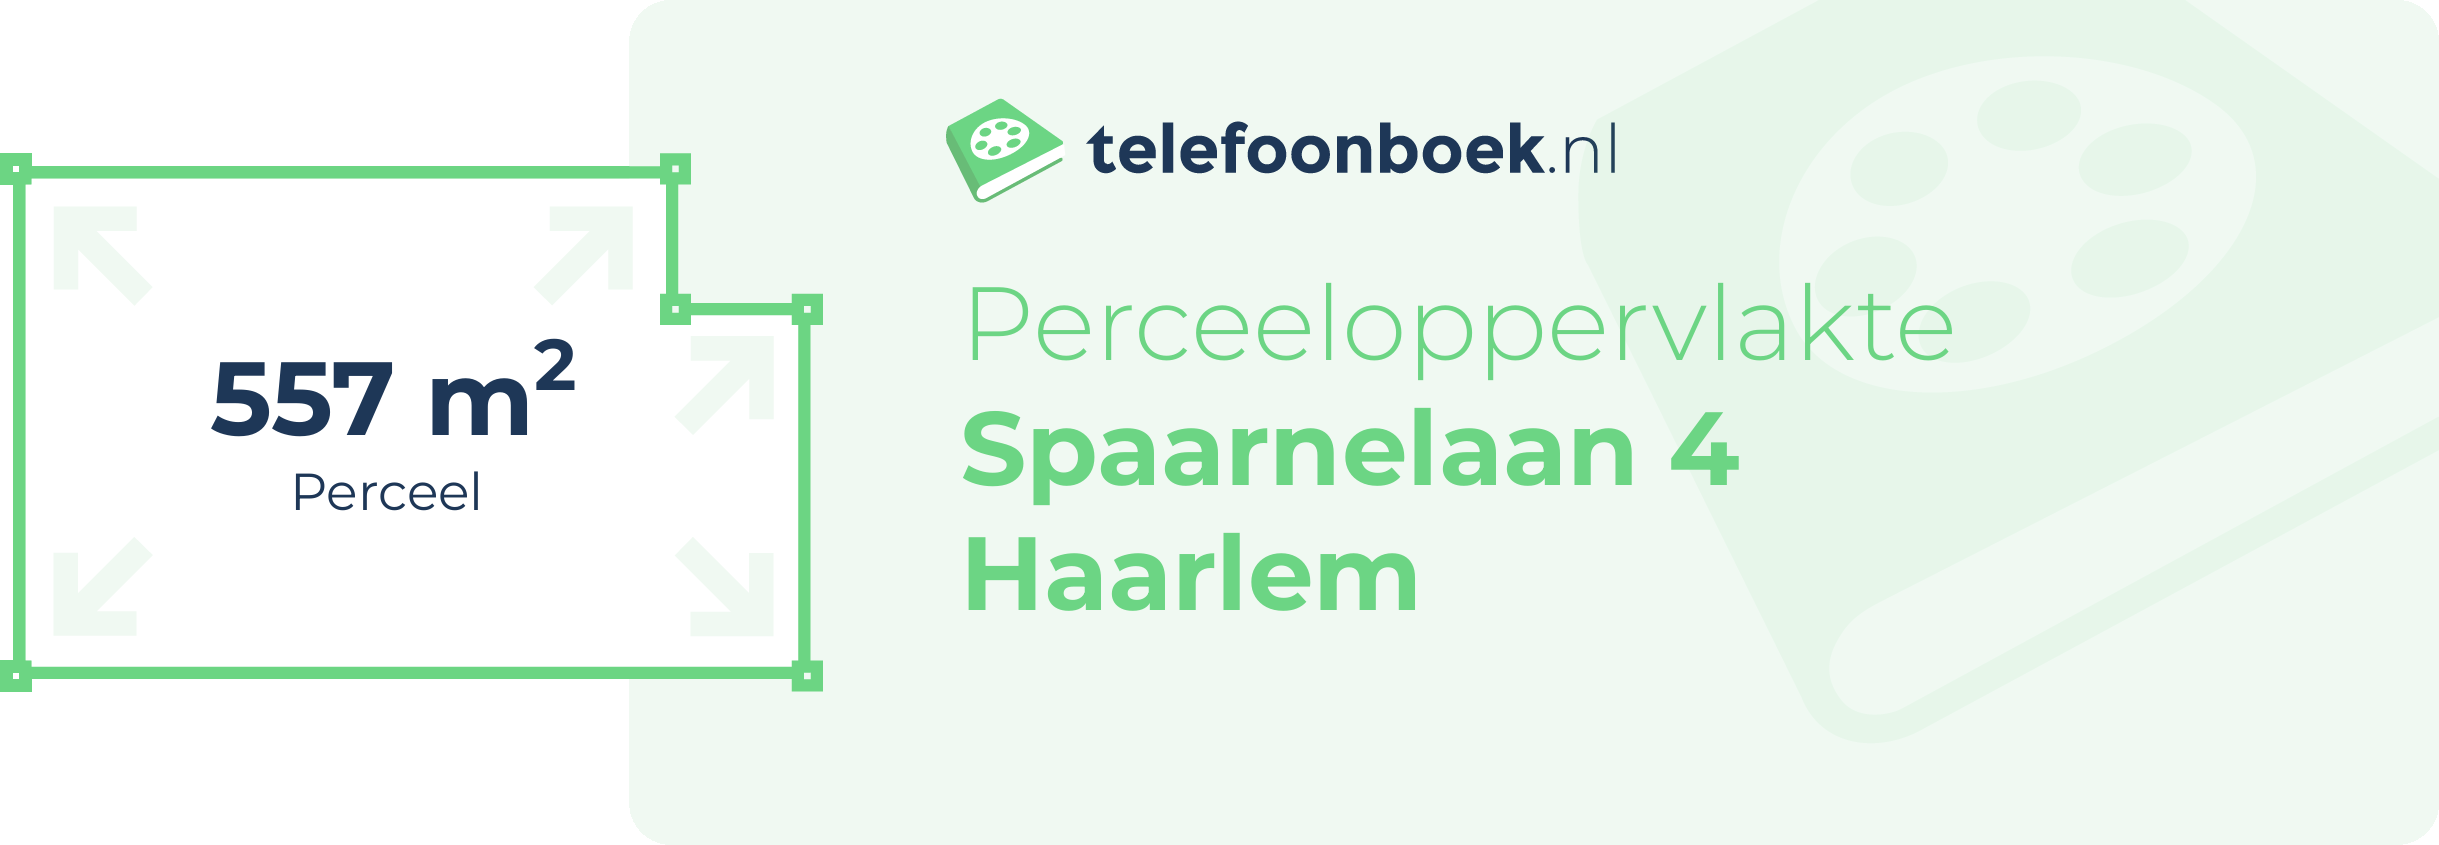 Perceeloppervlakte Spaarnelaan 4 Haarlem